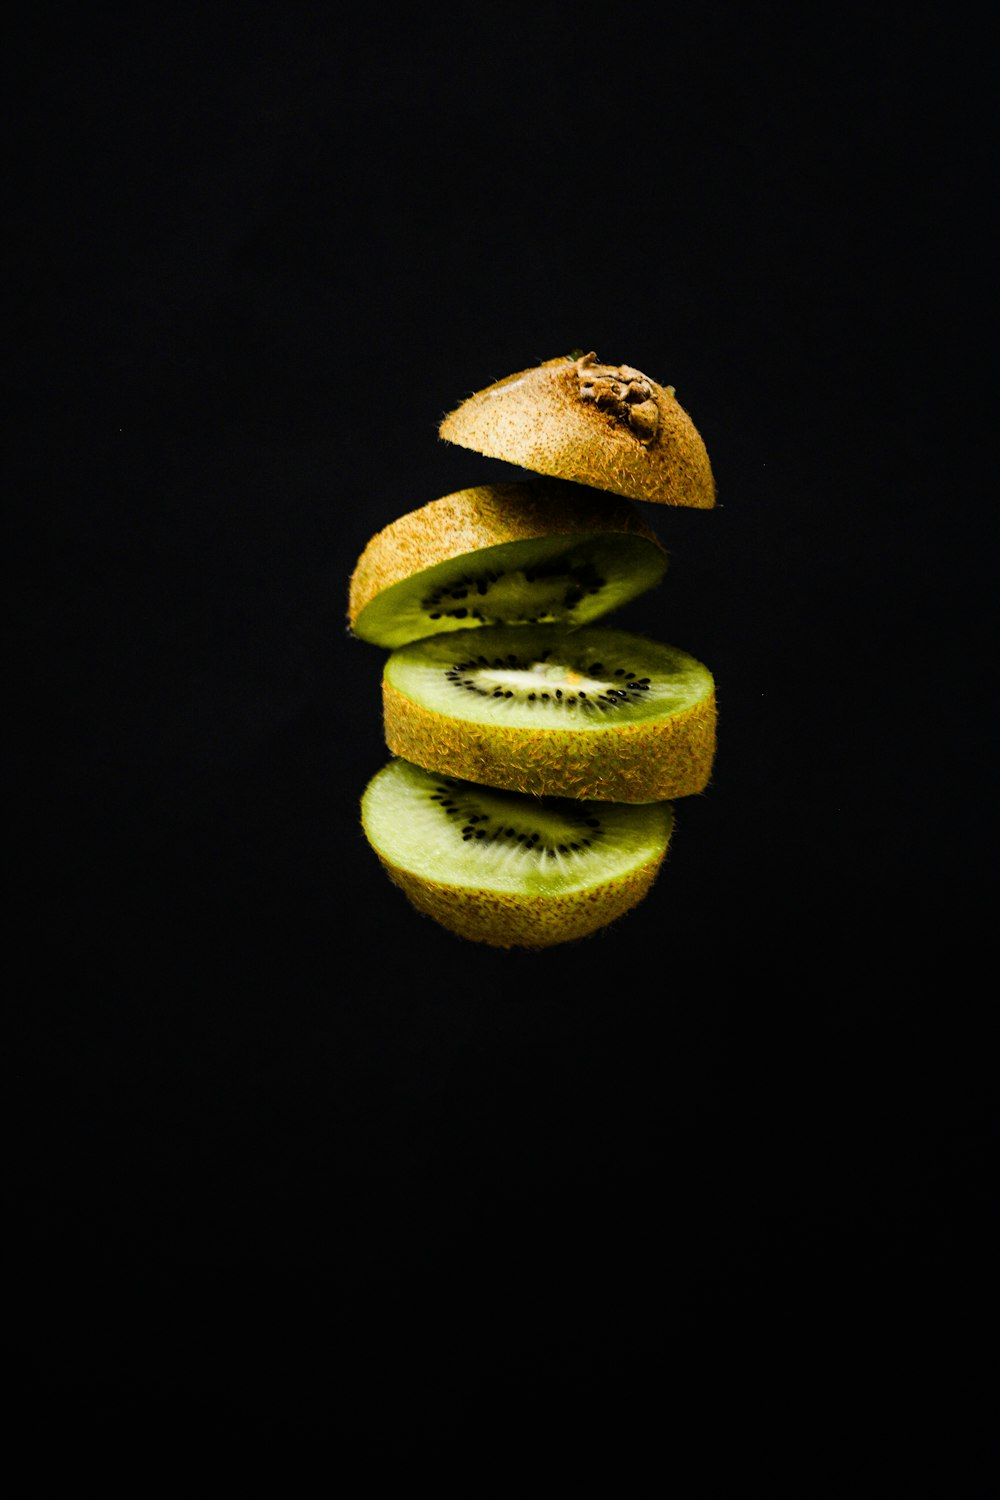 sliced green fruit on black background